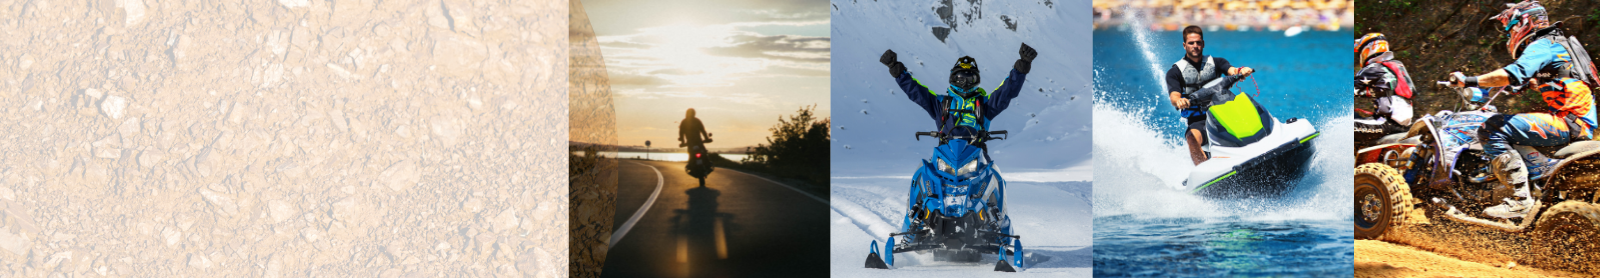 PowerSports images. Jet-sking, biking, snowmobiling